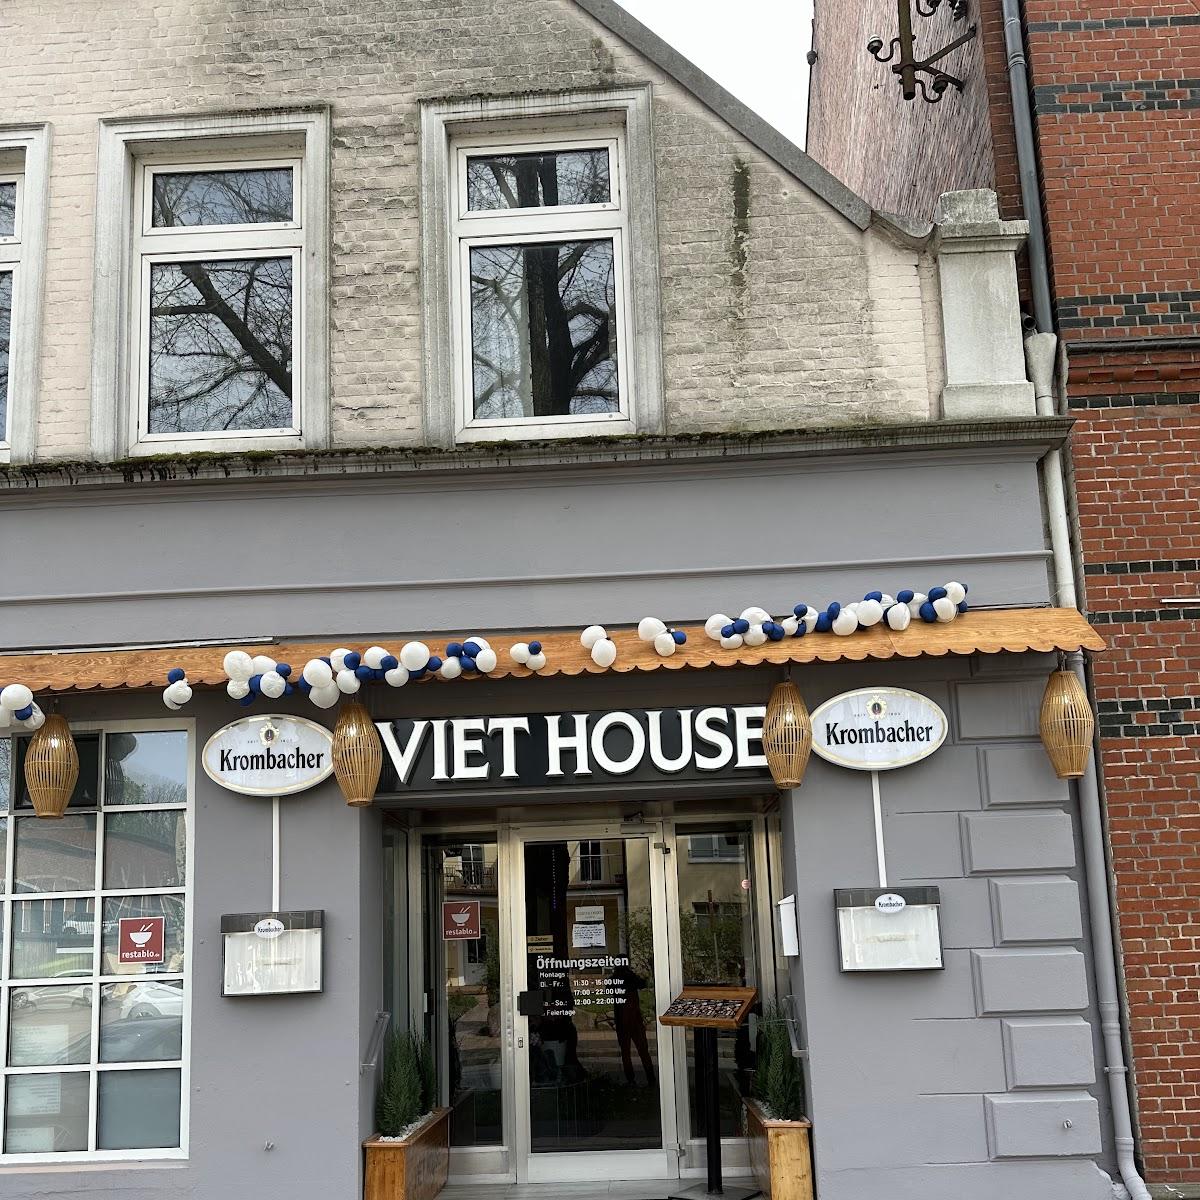 Restaurant "Viet House" in Neumünster